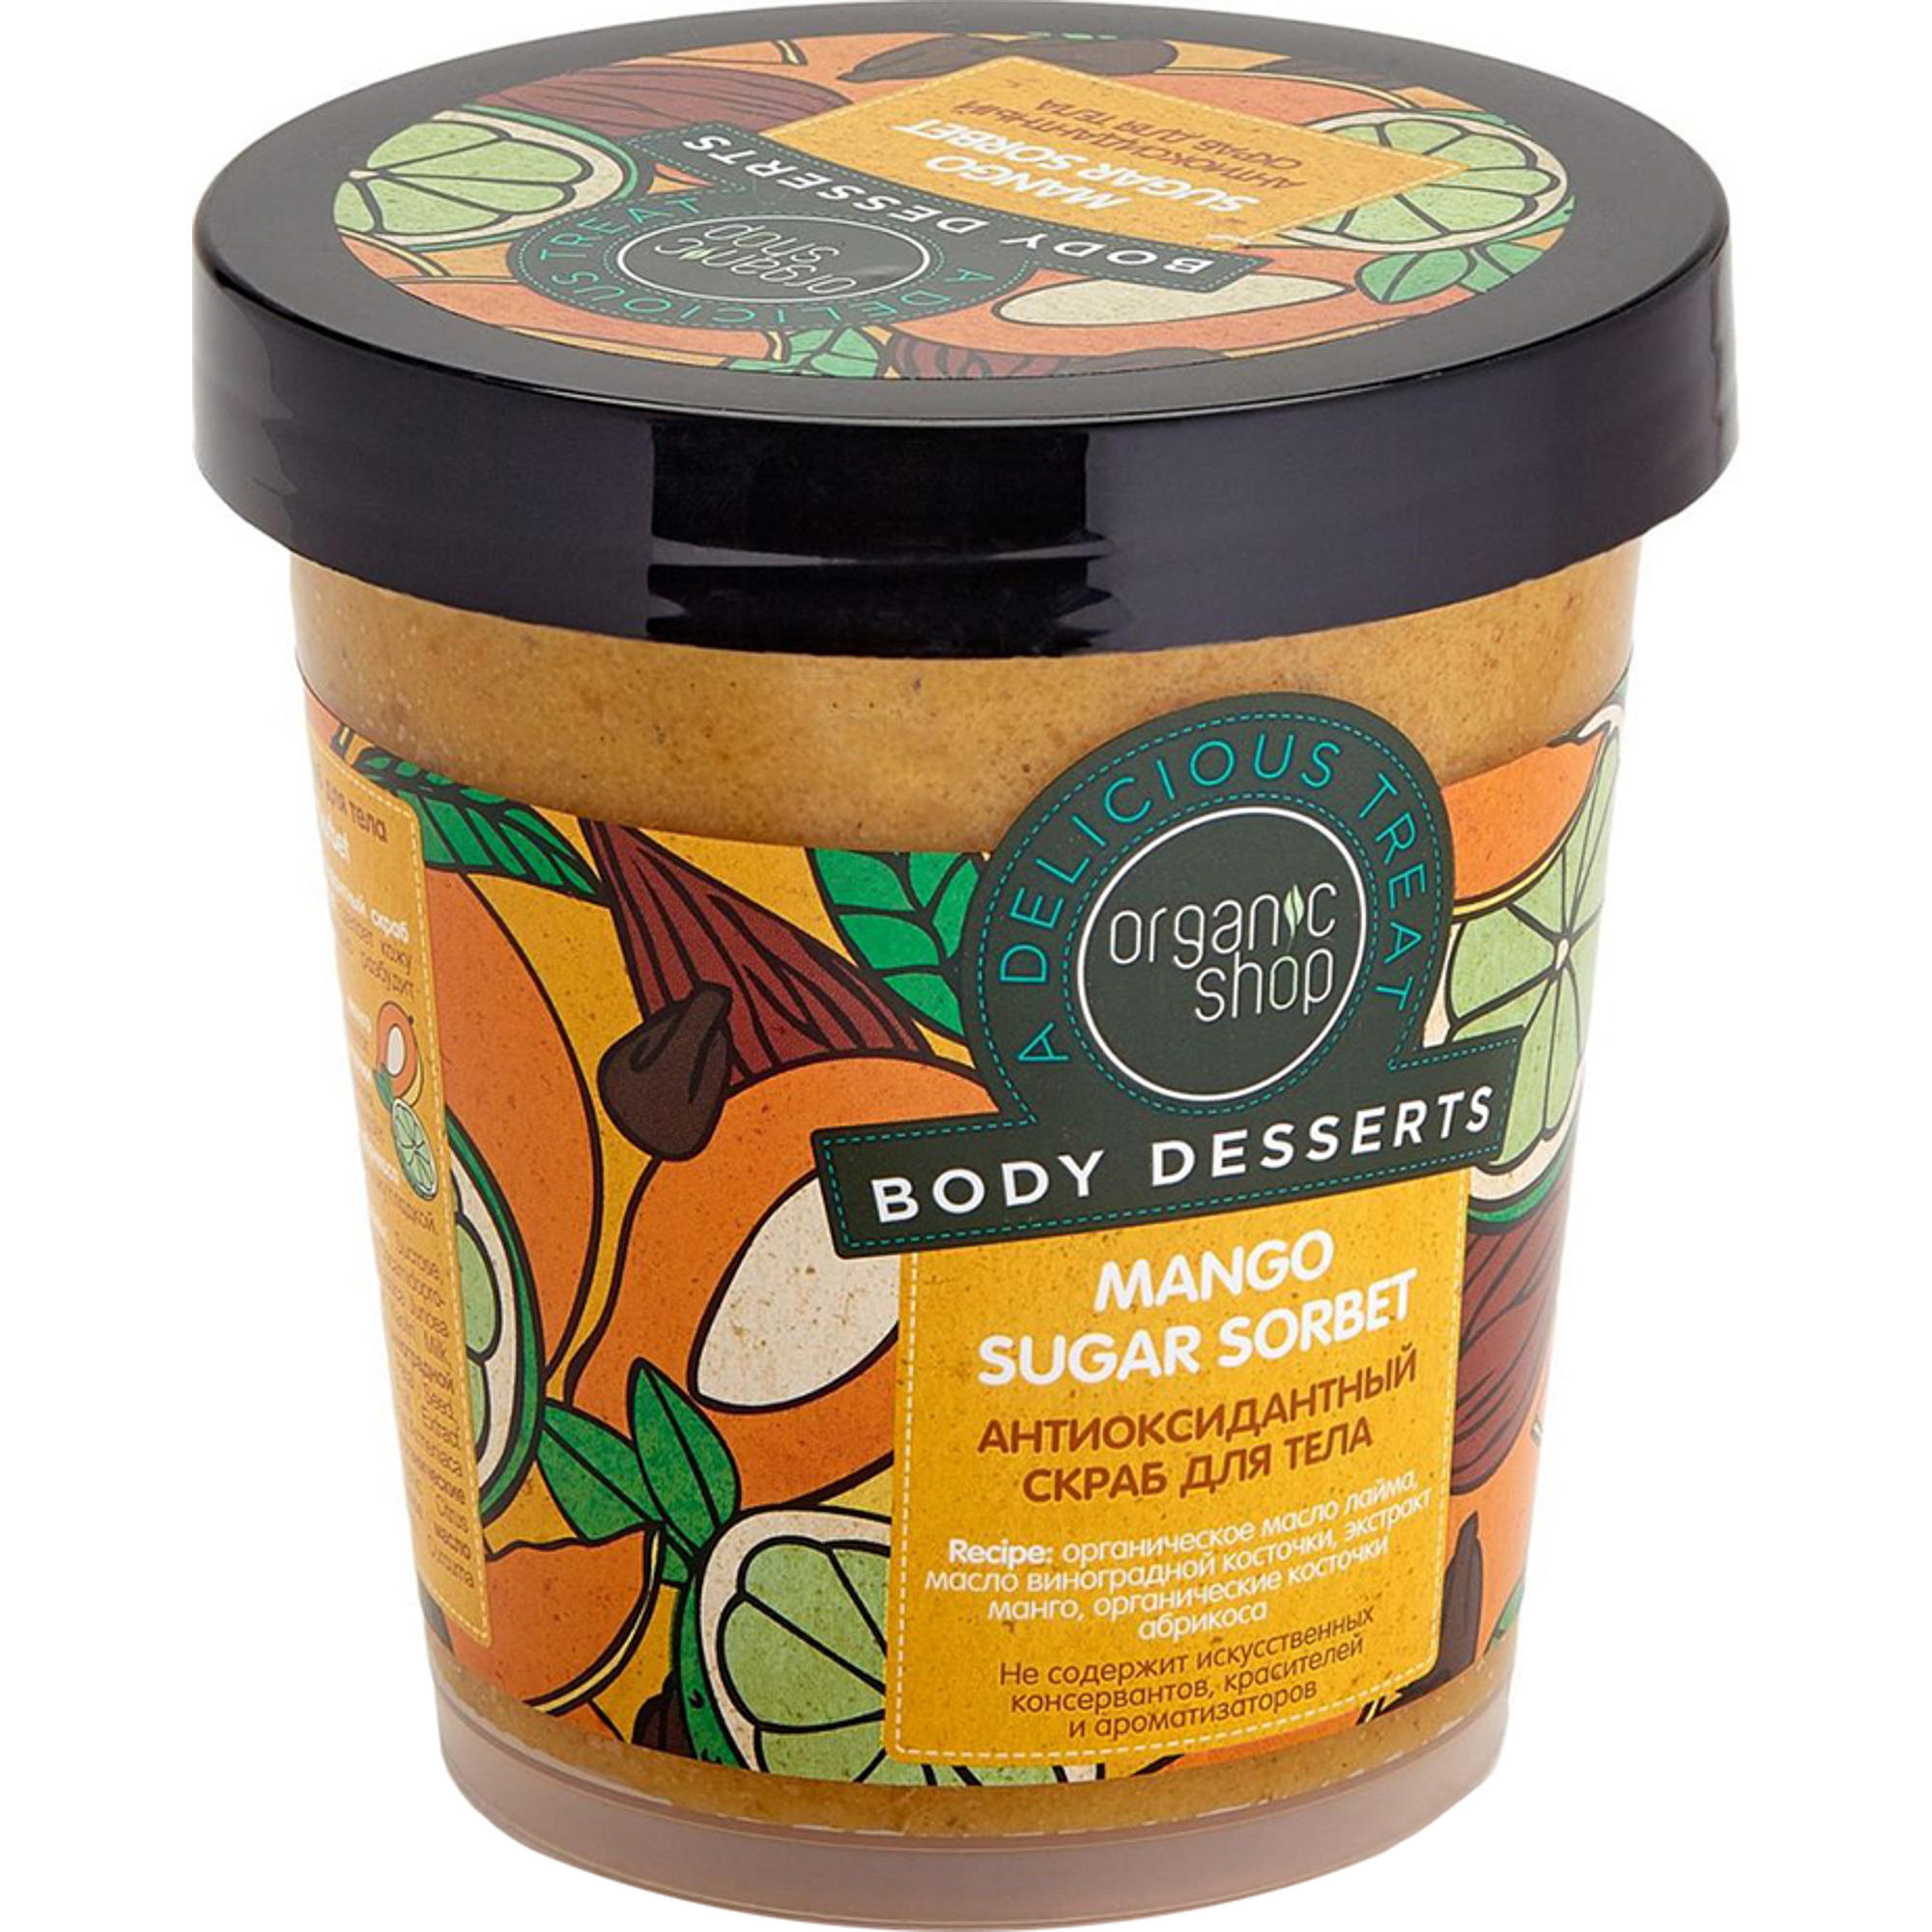 Organica скраб. Organic shop body Desserts скраб для тела Mango. Organic shop скраб манго. Скраб для тела Органик шоп манго. Скраб Organic body Scrub.